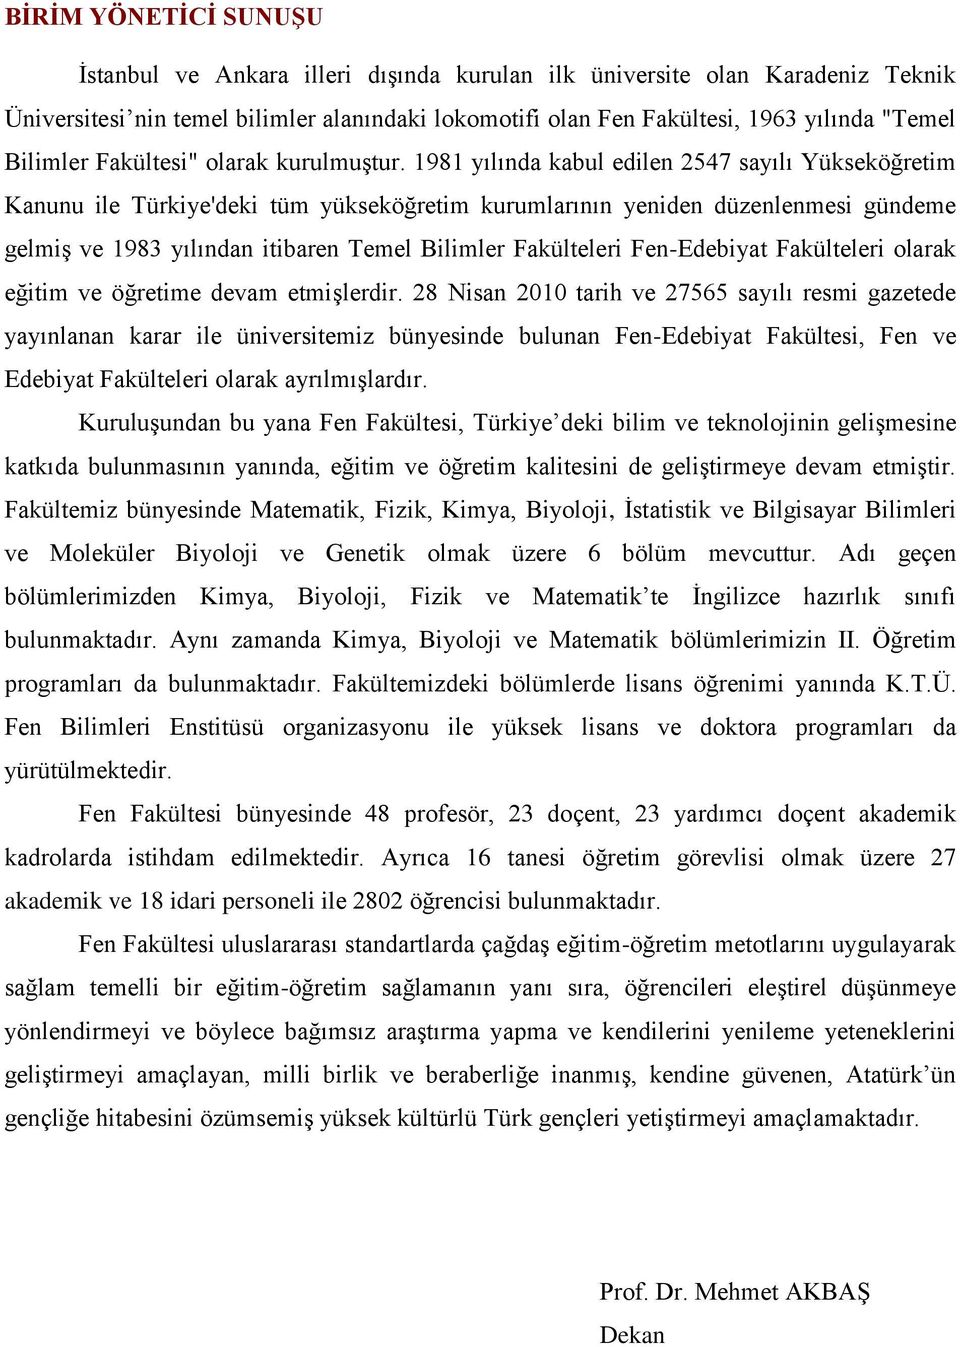 1981 yılında kabul edilen 2547 sayılı Yükseköğretim Kanunu ile Türkiye'deki tüm yükseköğretim kurumlarının yeniden düzenlenmesi gündeme gelmiş ve 1983 yılından itibaren Temel Bilimler Fakülteleri